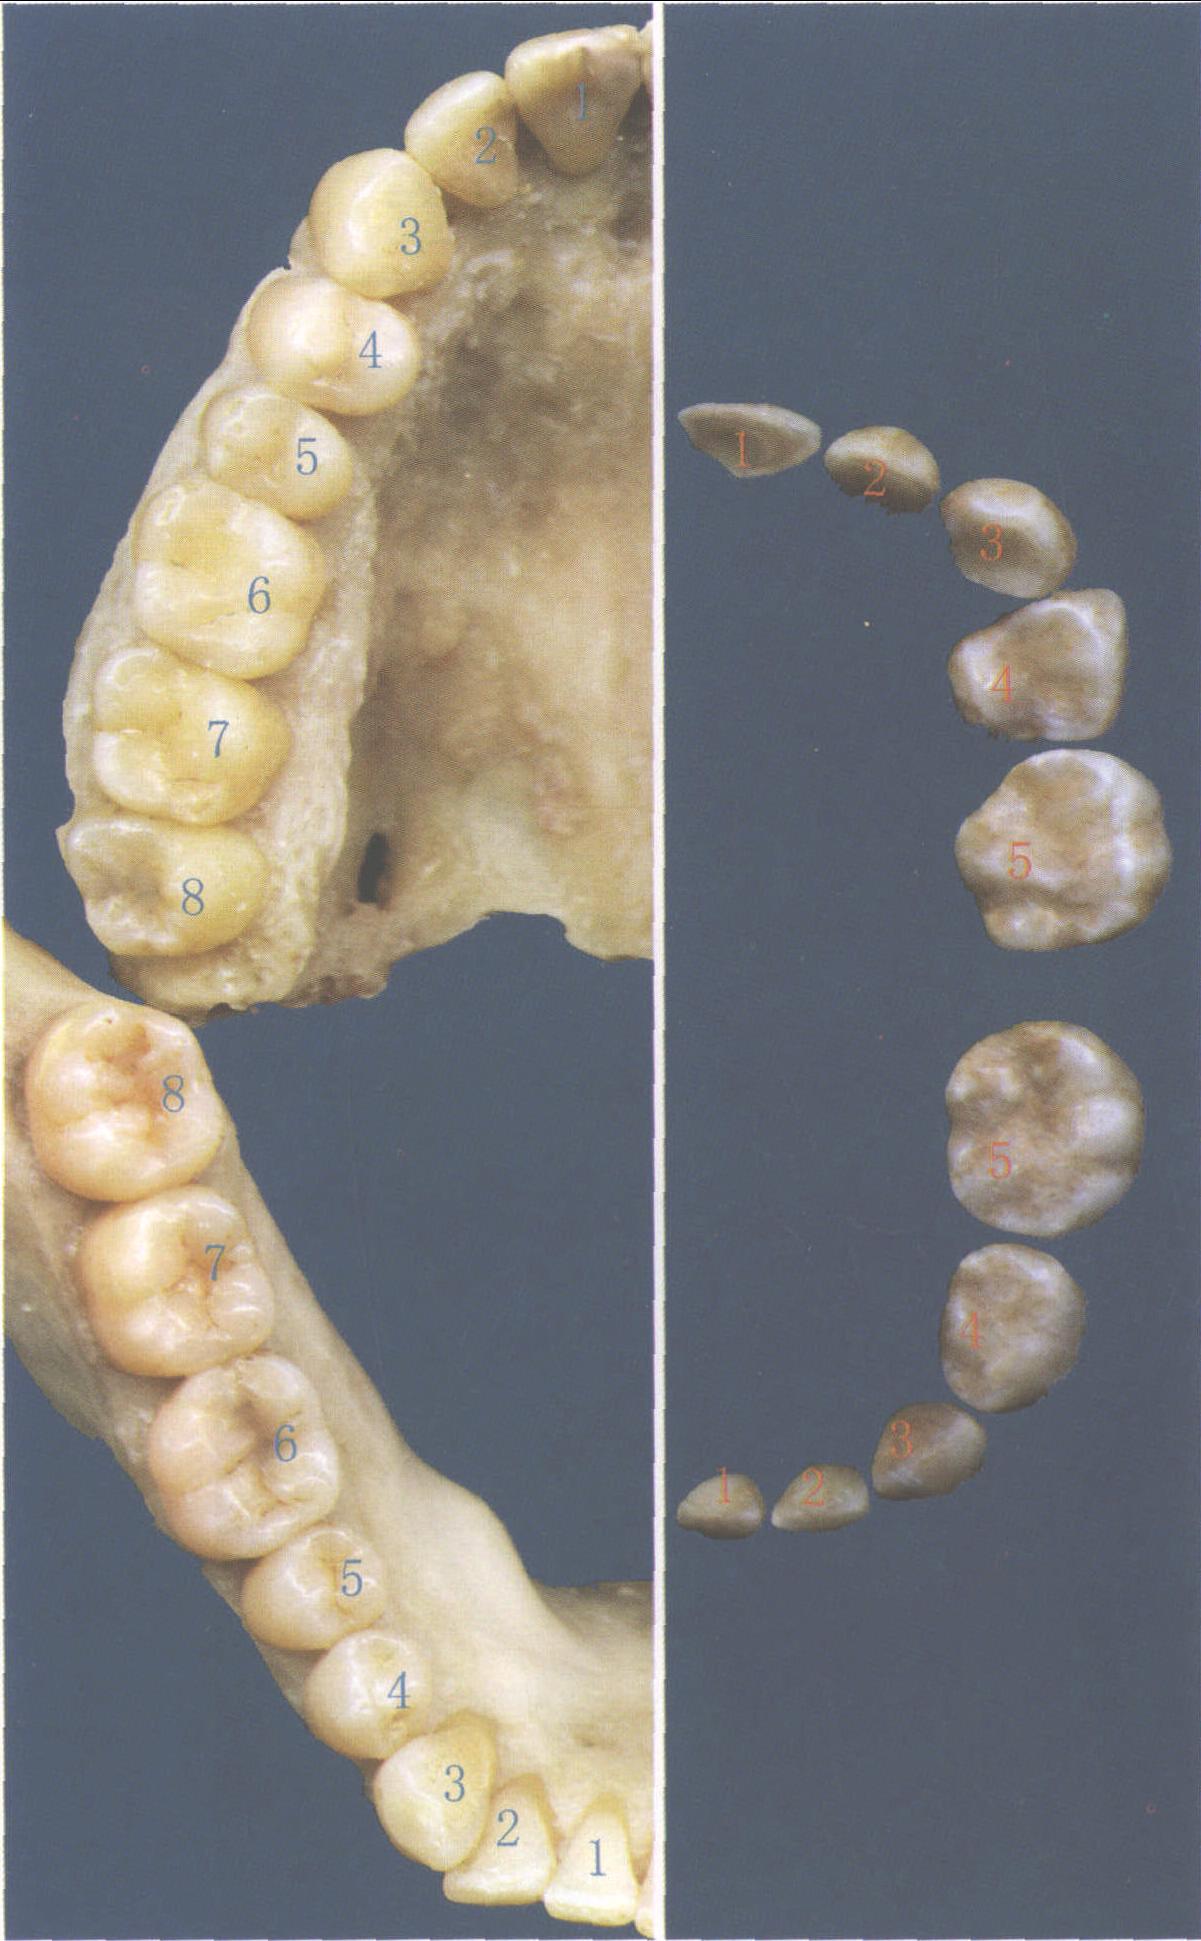 牙体解剖：前牙、前磨牙、磨牙 - 口腔医学 - 天山医学院